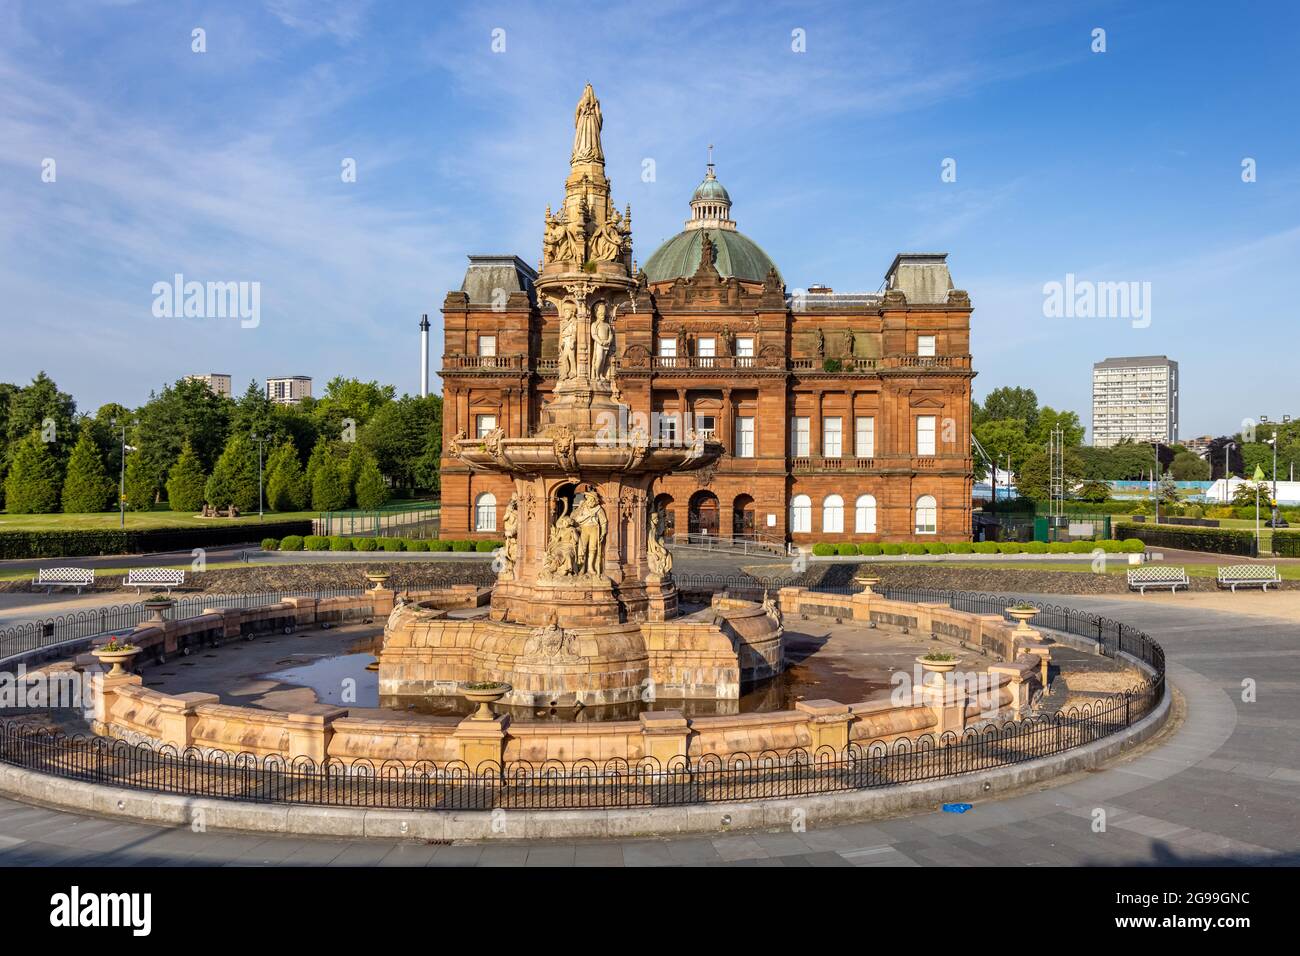 La Fontana di Daulton fuori dal Palazzo del Popolo, un museo di storia sociale situato nella storica Glasgow Green in Scozia, Regno Unito Foto Stock